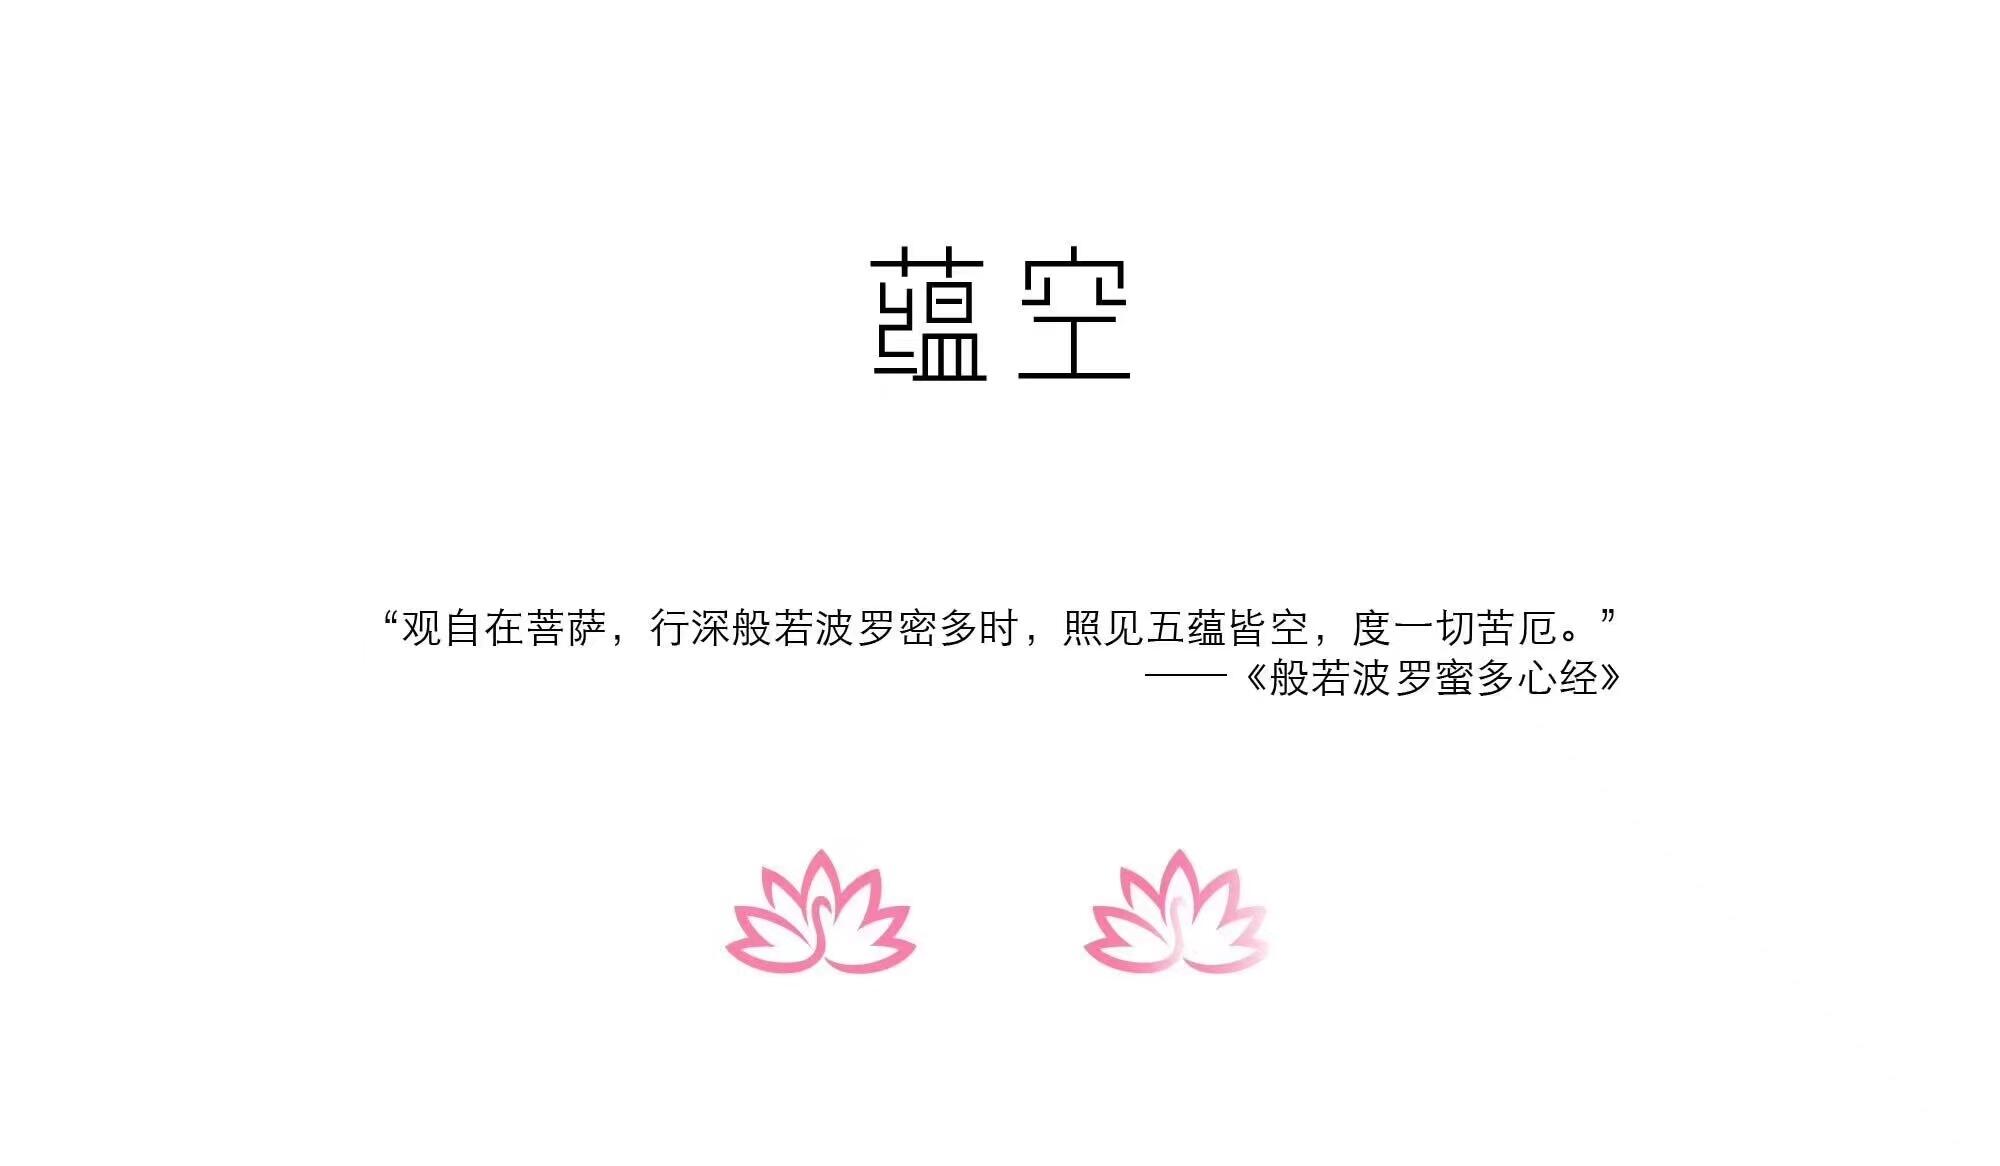 刘畊宏记得要勇敢舞蹈挑战是怎么回事，关于刘迎宏 舞蹈的新消息。